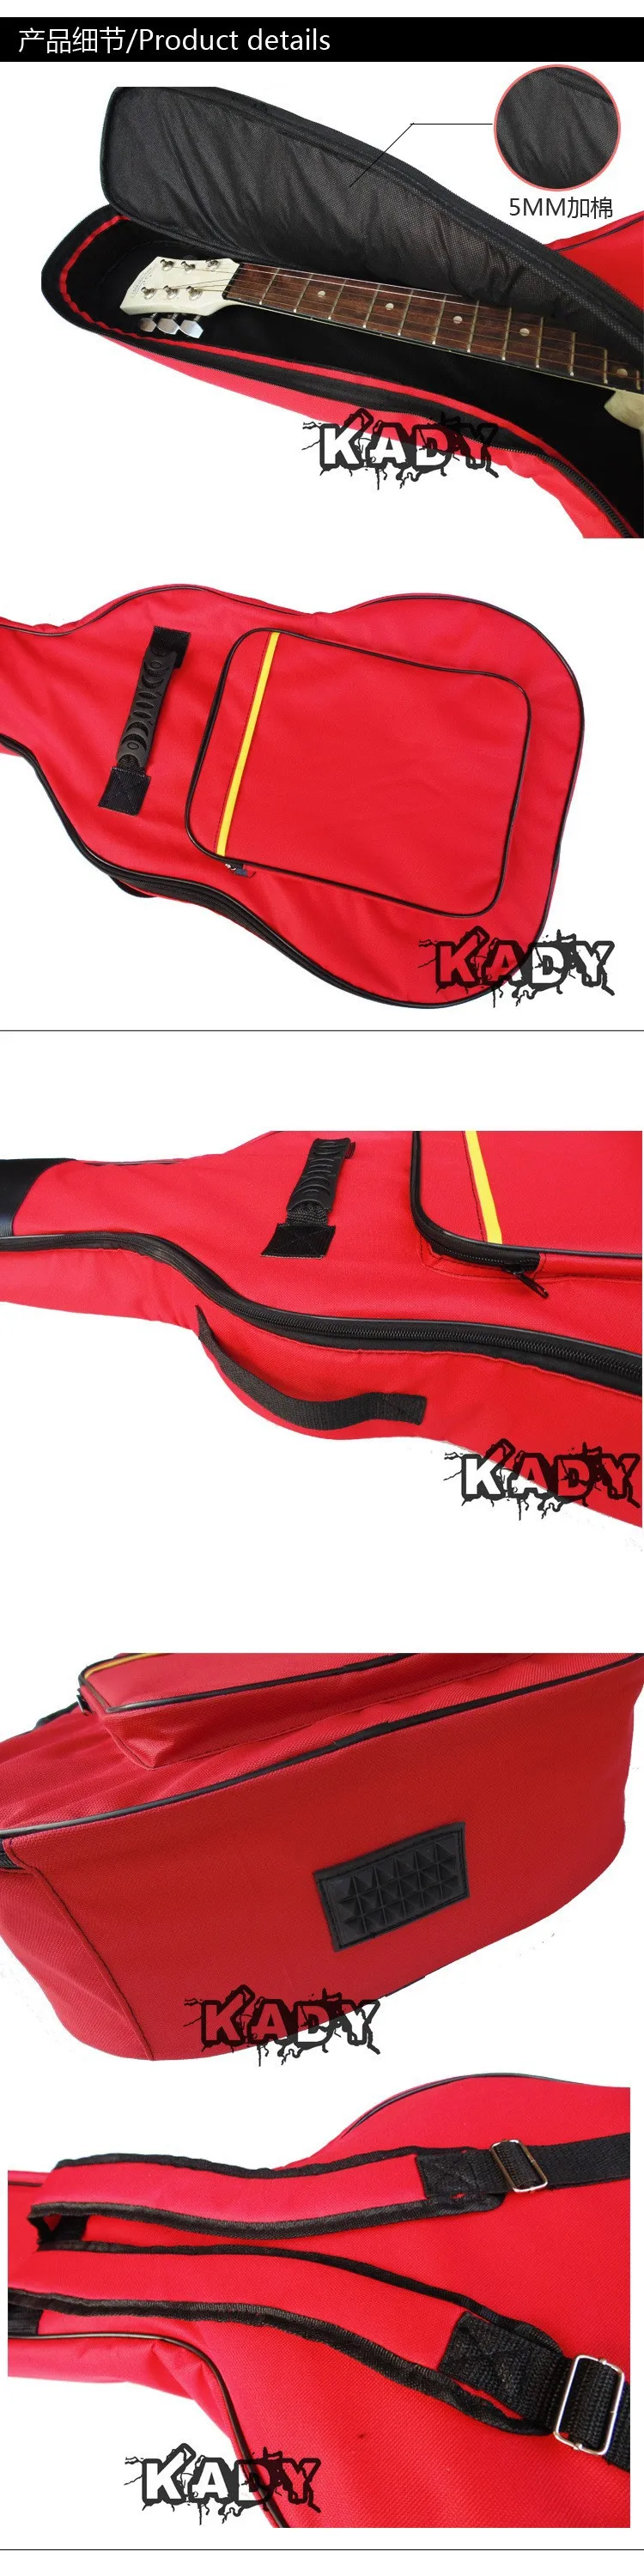 5 цветов FD хорошее качество 39 40 41 дюймов акустическая гитара gig сумка рюкзак плеча мягкий защиты водонепроницаемый бесплатно shippin